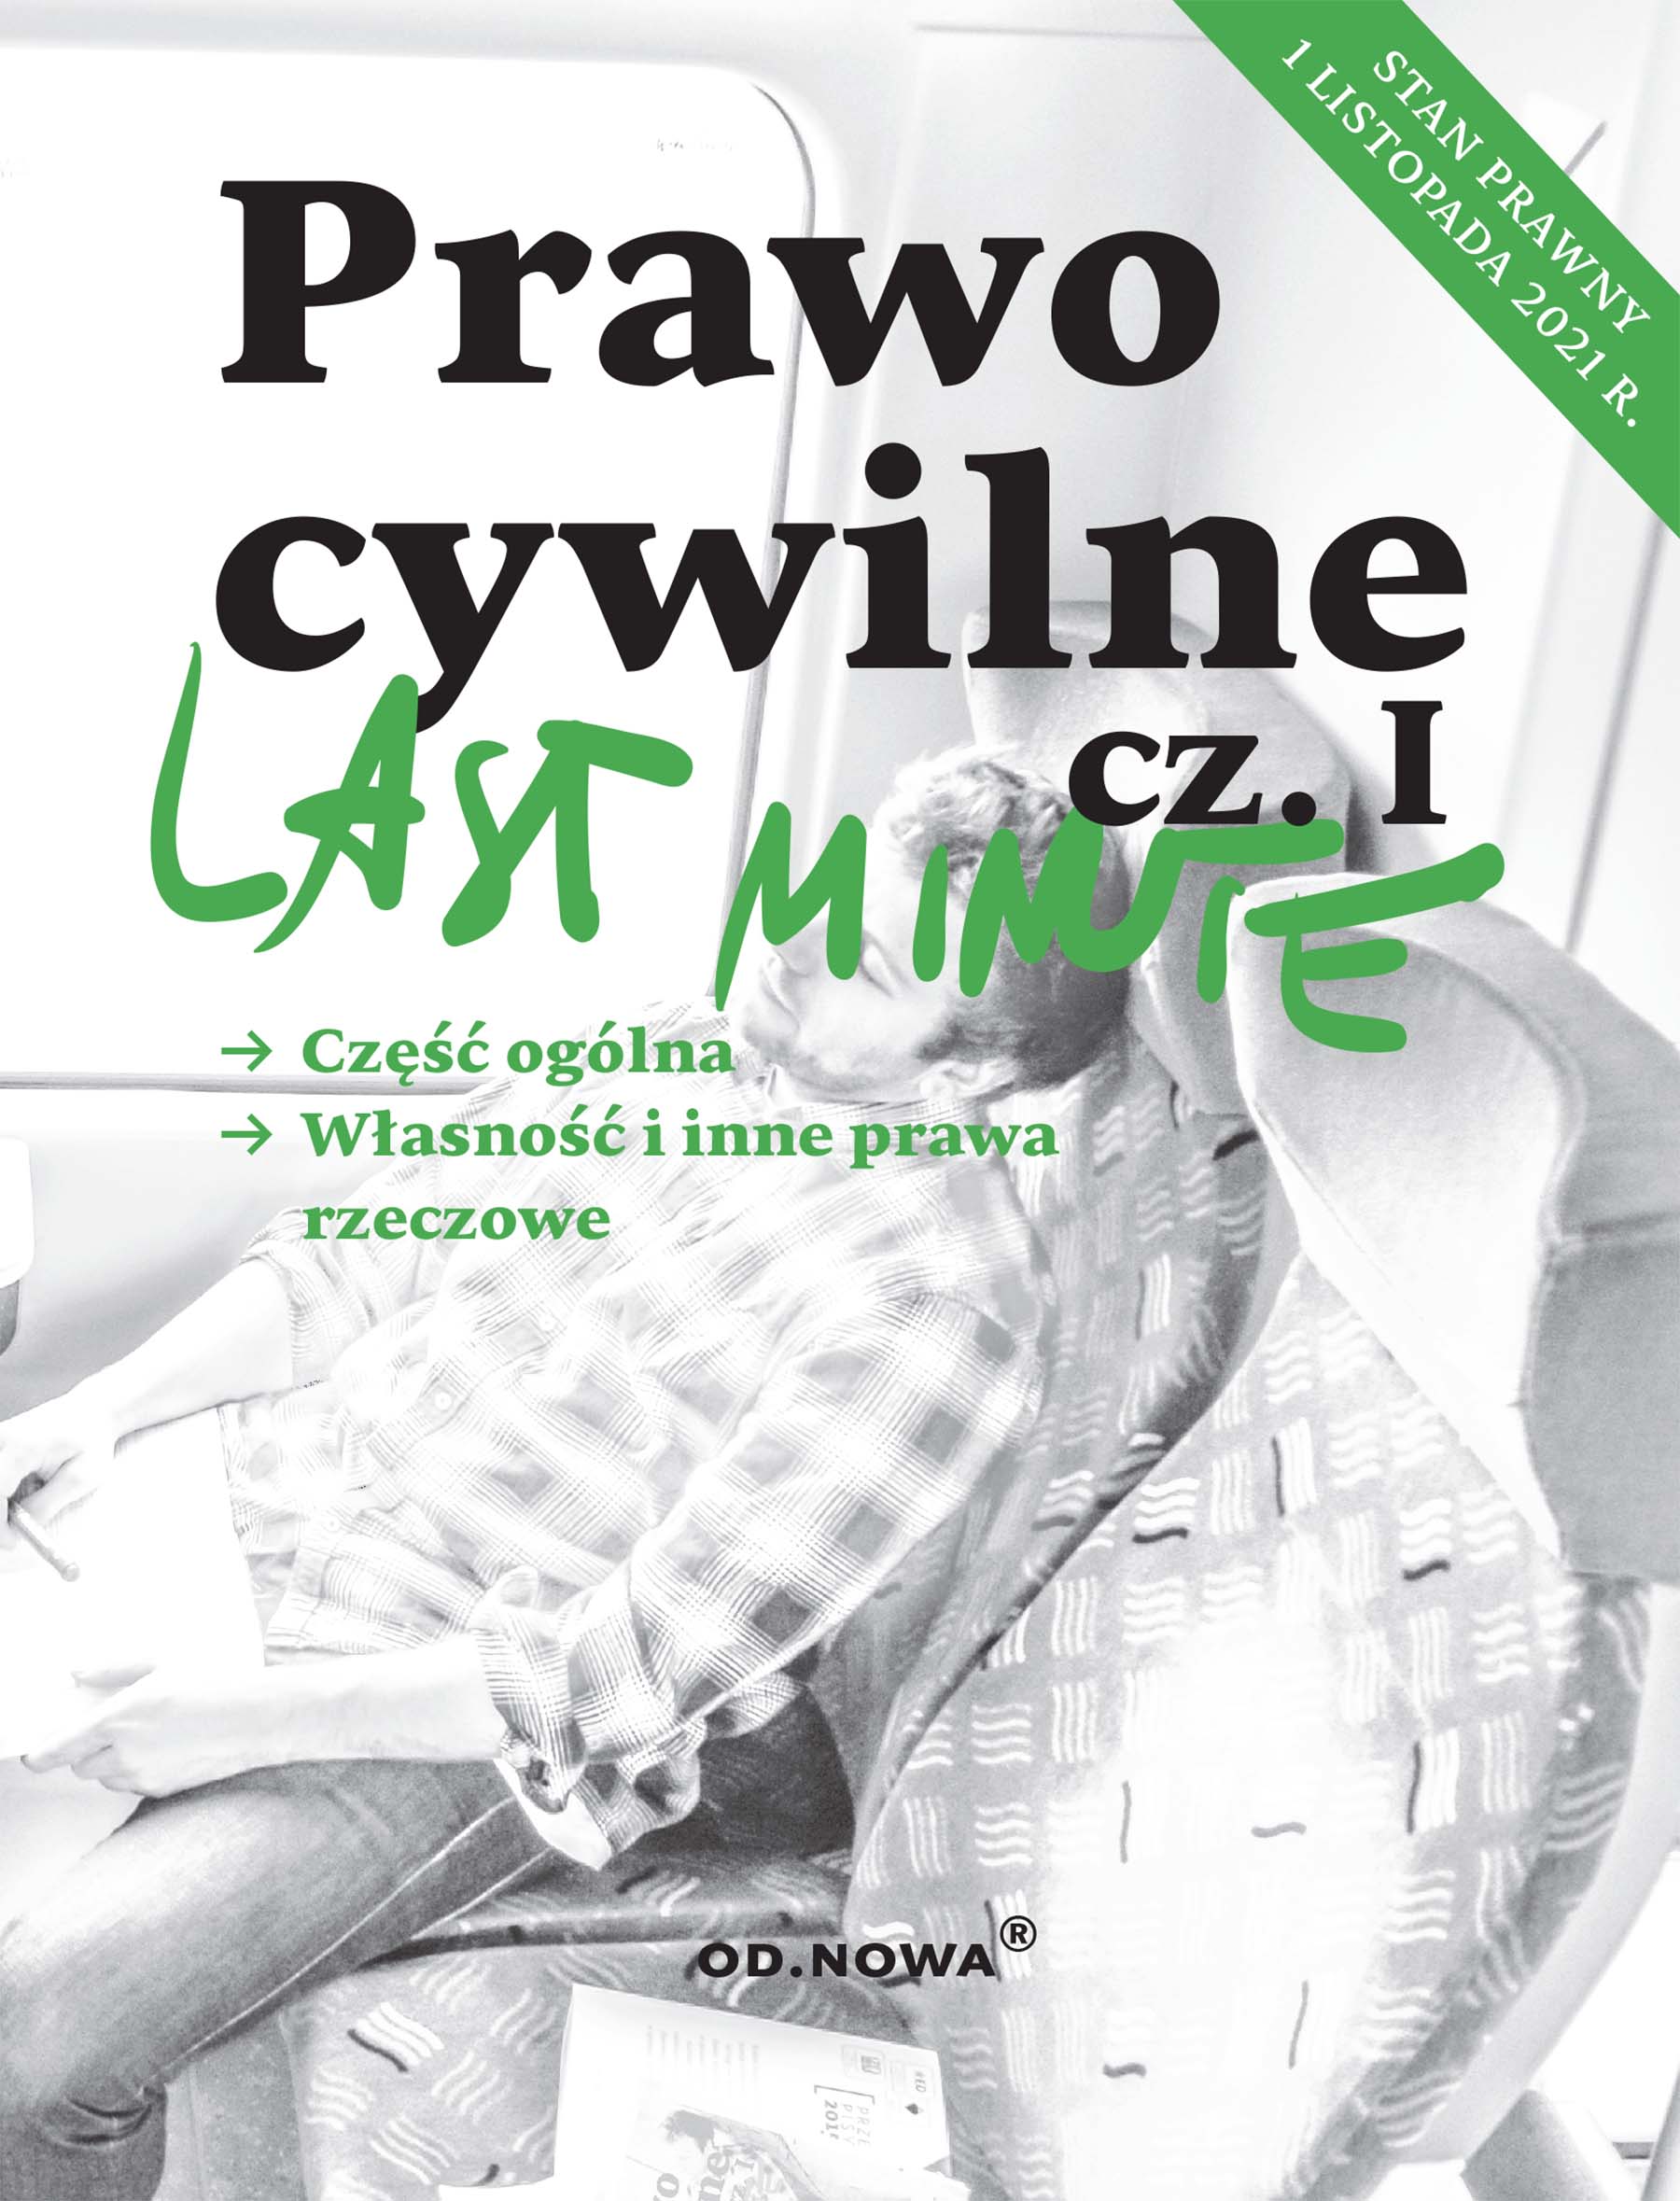 Last Minute Prawo cywilne cz.I - listopad 2021